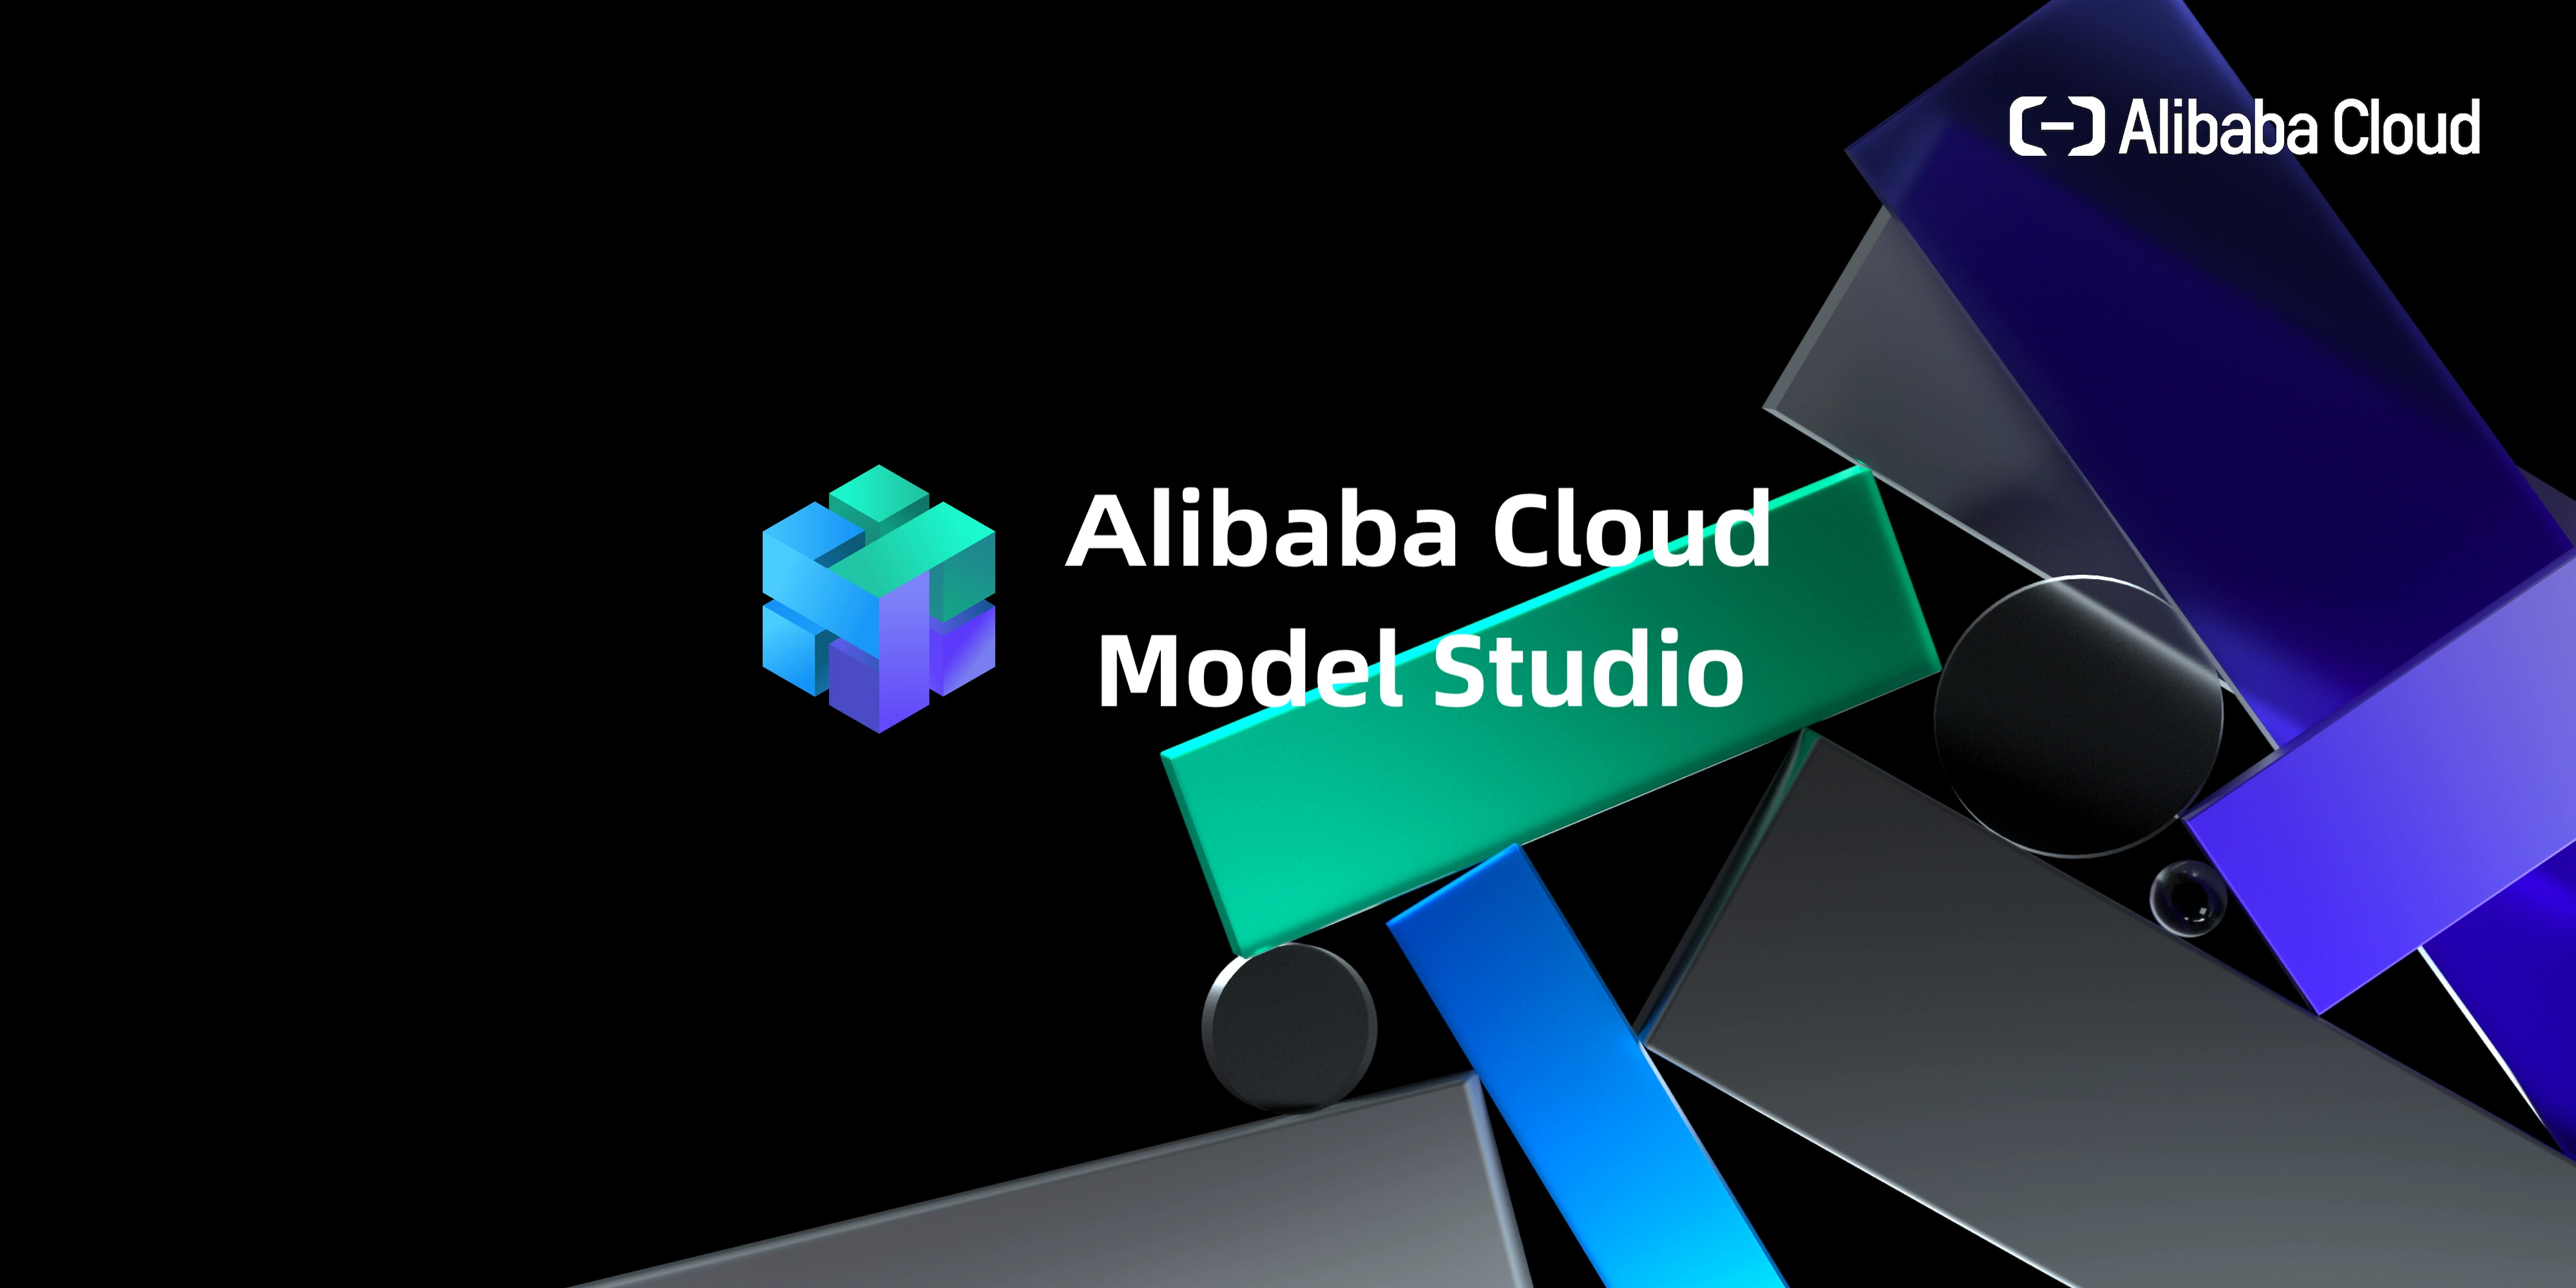 ¿Qué es Alibaba Cloud Model Studio?